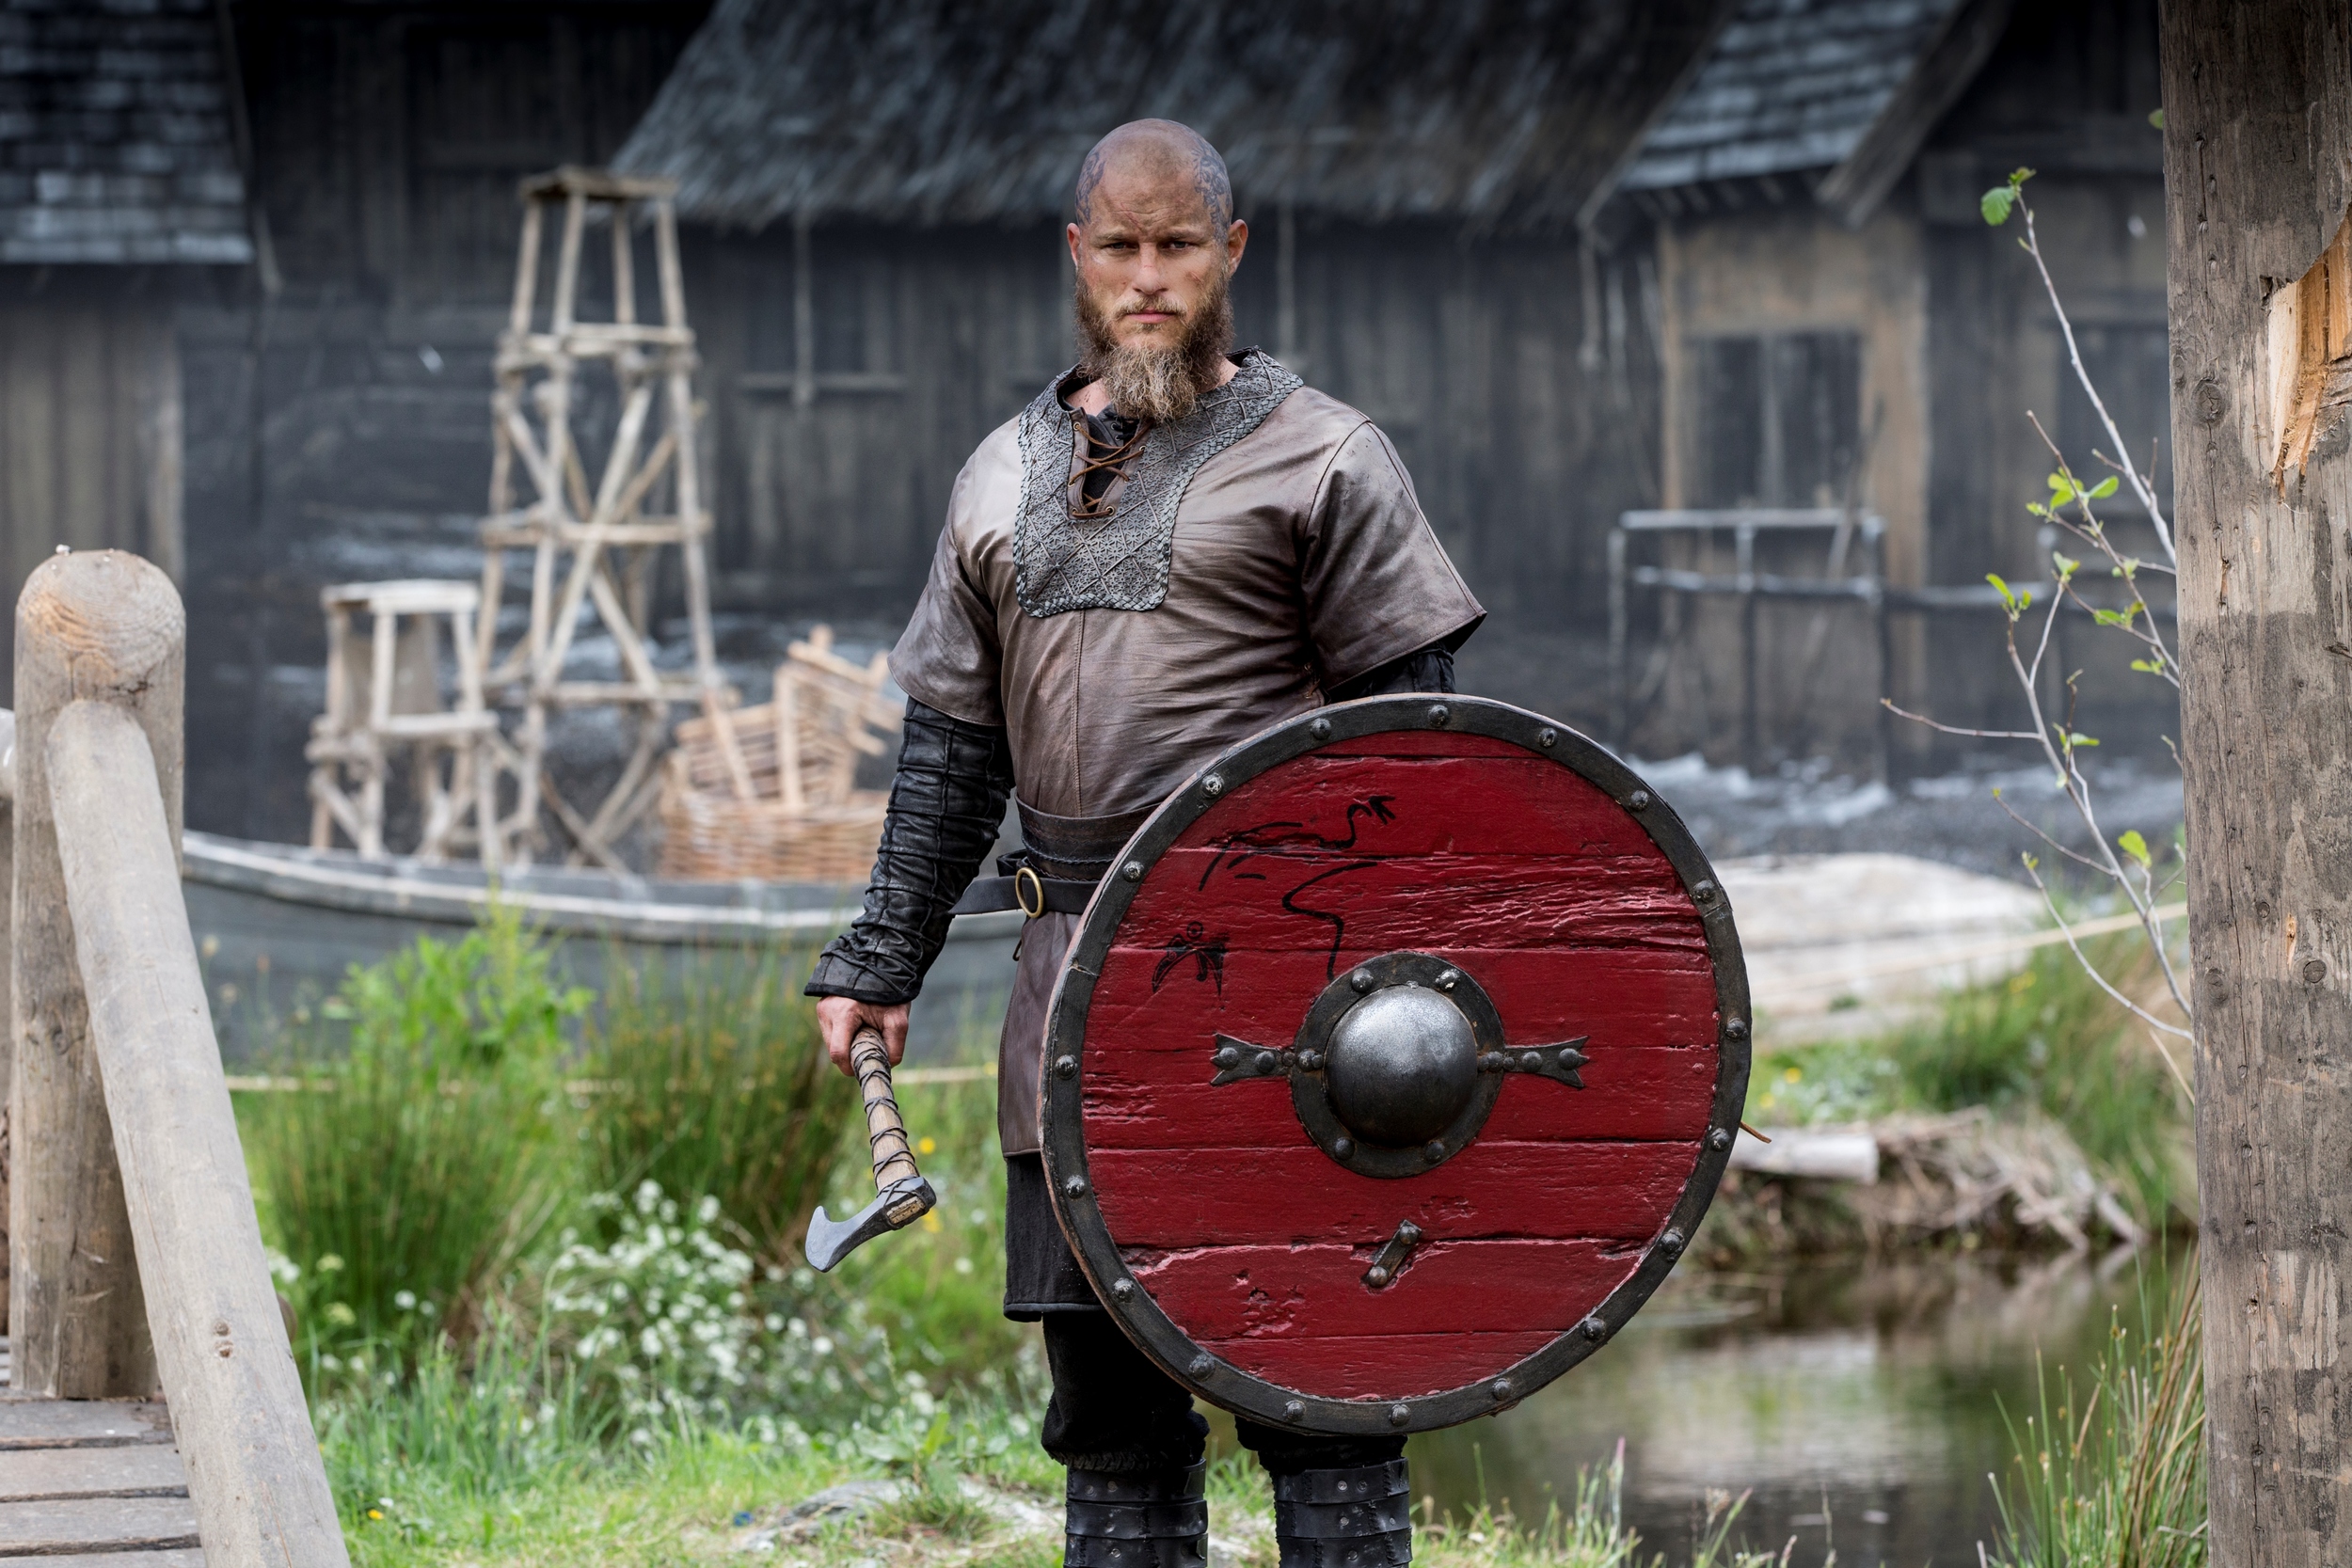   Travis Fimmel is Ragnar Lothbrook (Vikings)  Image - SBS 